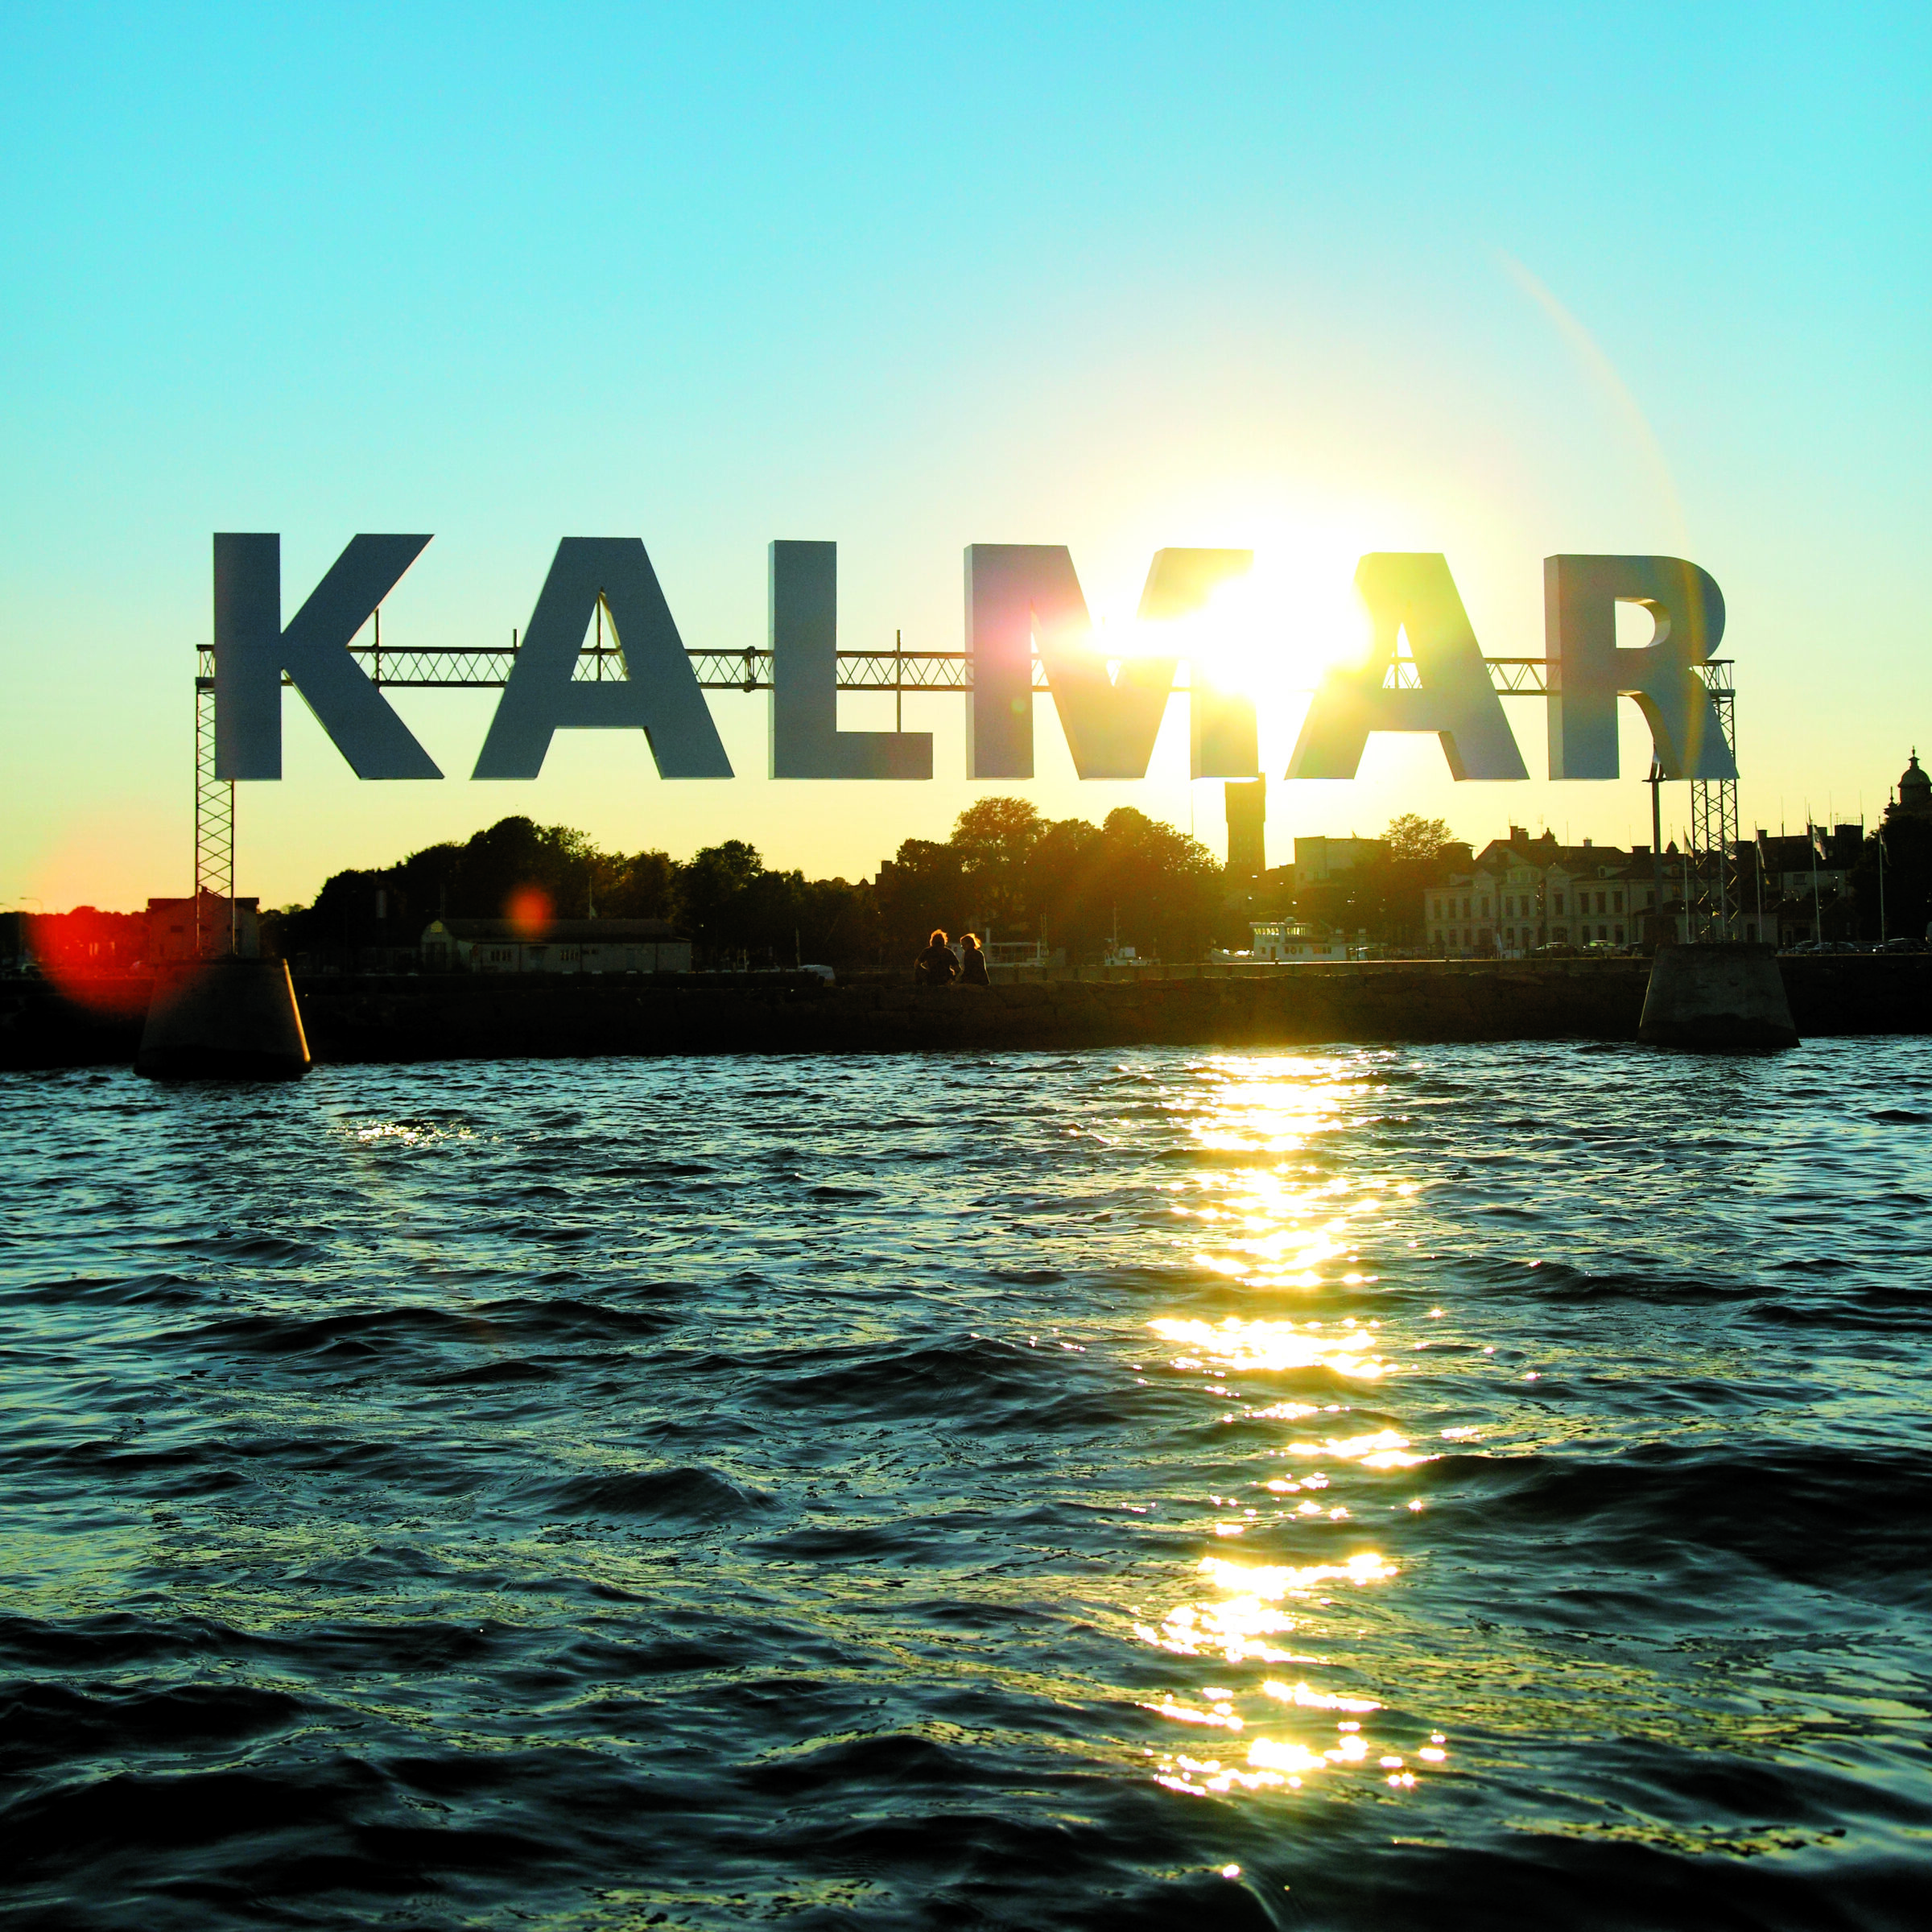 Skylt med bokstaverna Kalmar, placerad i havet.